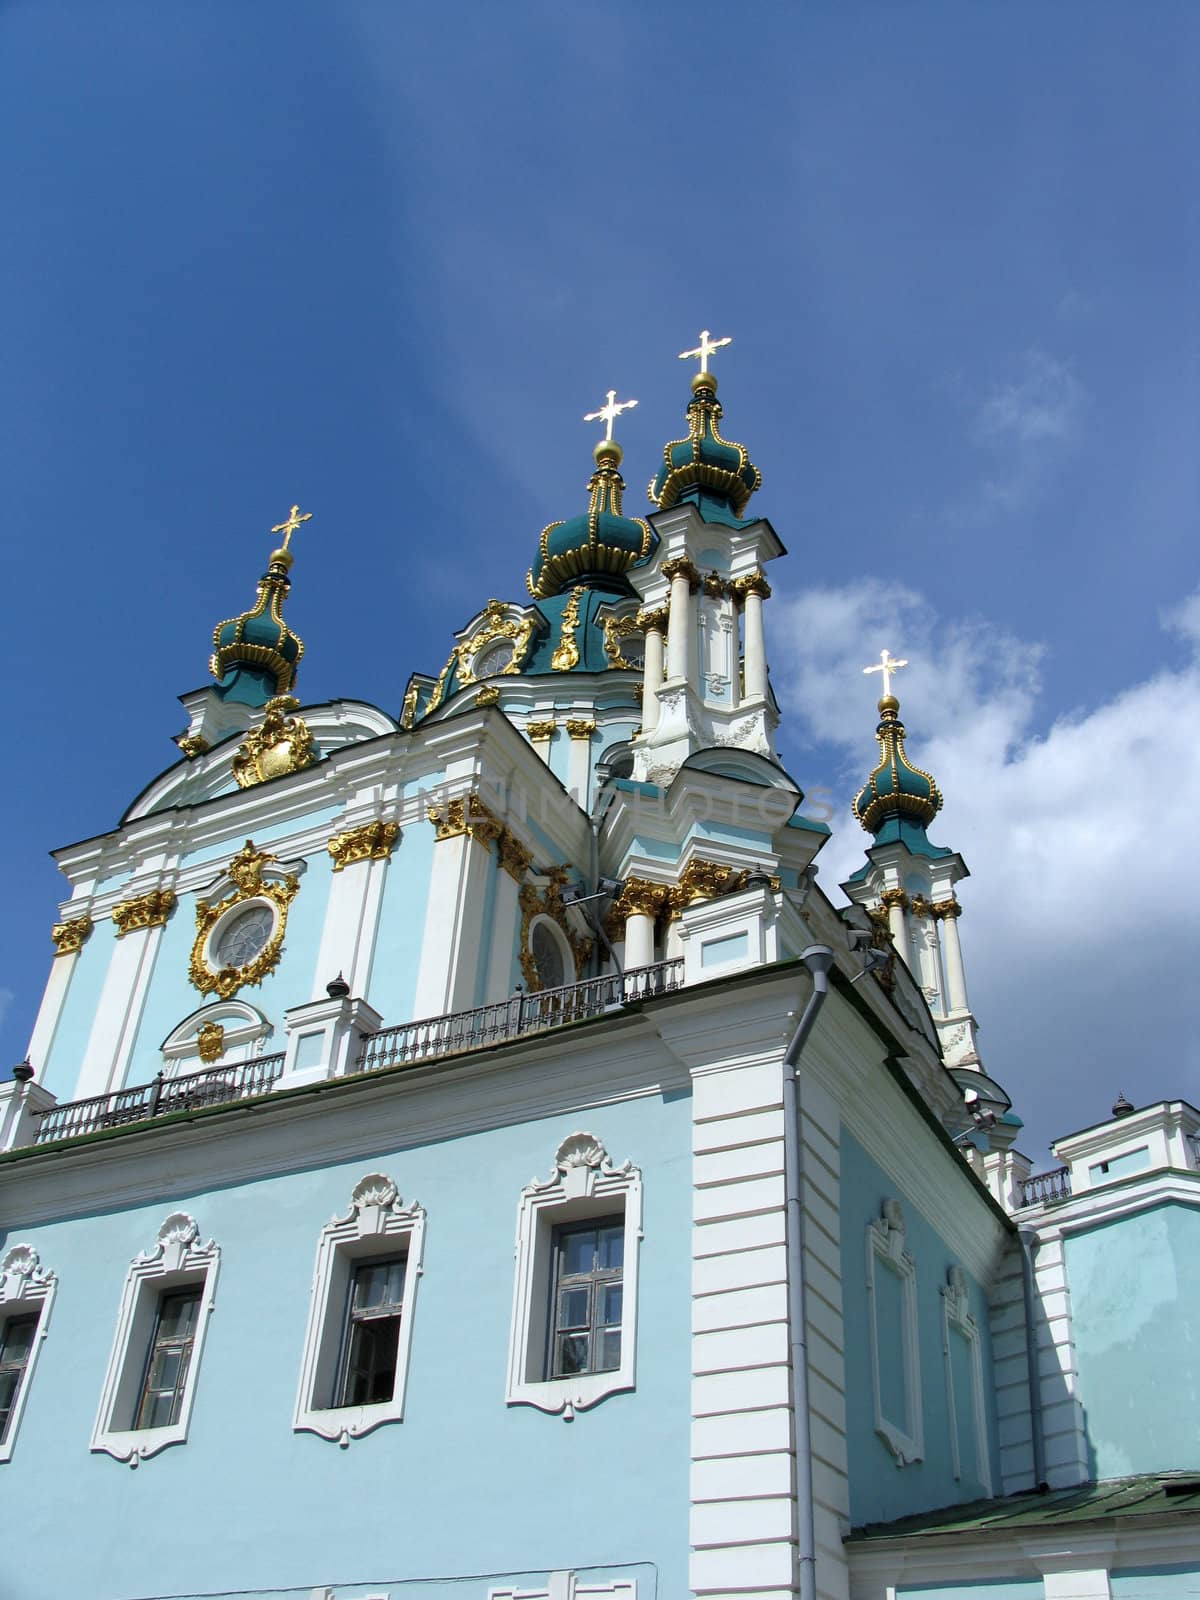 St. Andrew's church in Kiev by DNKSTUDIO